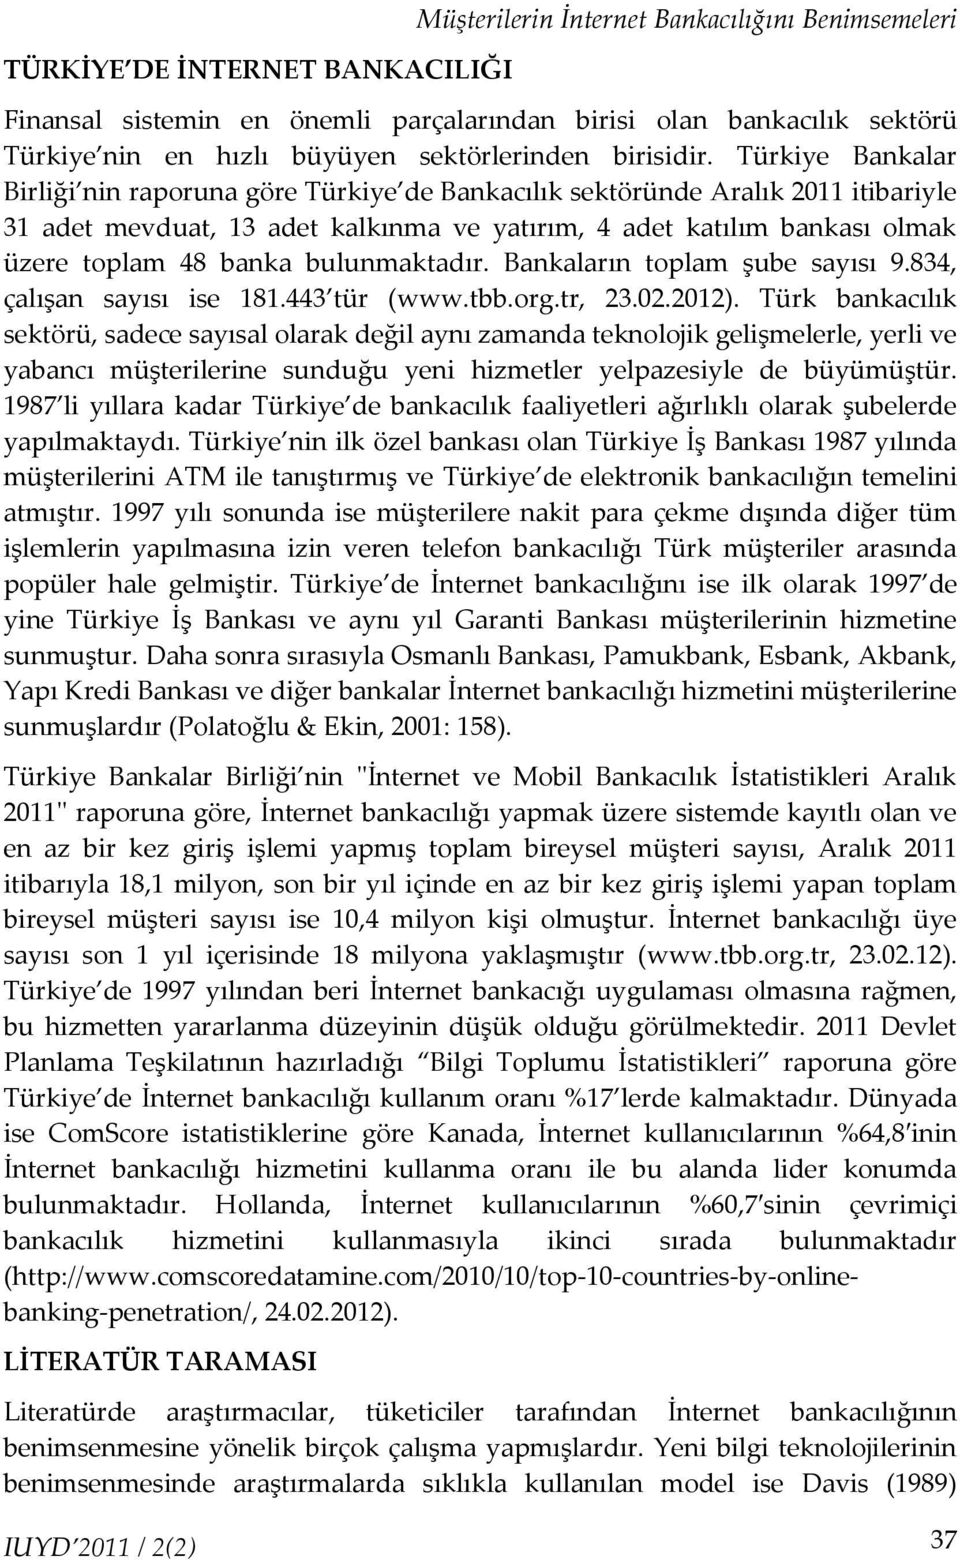 Türkiye Bankalar Birliği nin raporuna göre Türkiye de Bankacılık sektöründe Aralık 2011 itibariyle 31 adet mevduat, 13 adet kalkınma ve yatırım, 4 adet katılım bankası olmak üzere toplam 48 banka